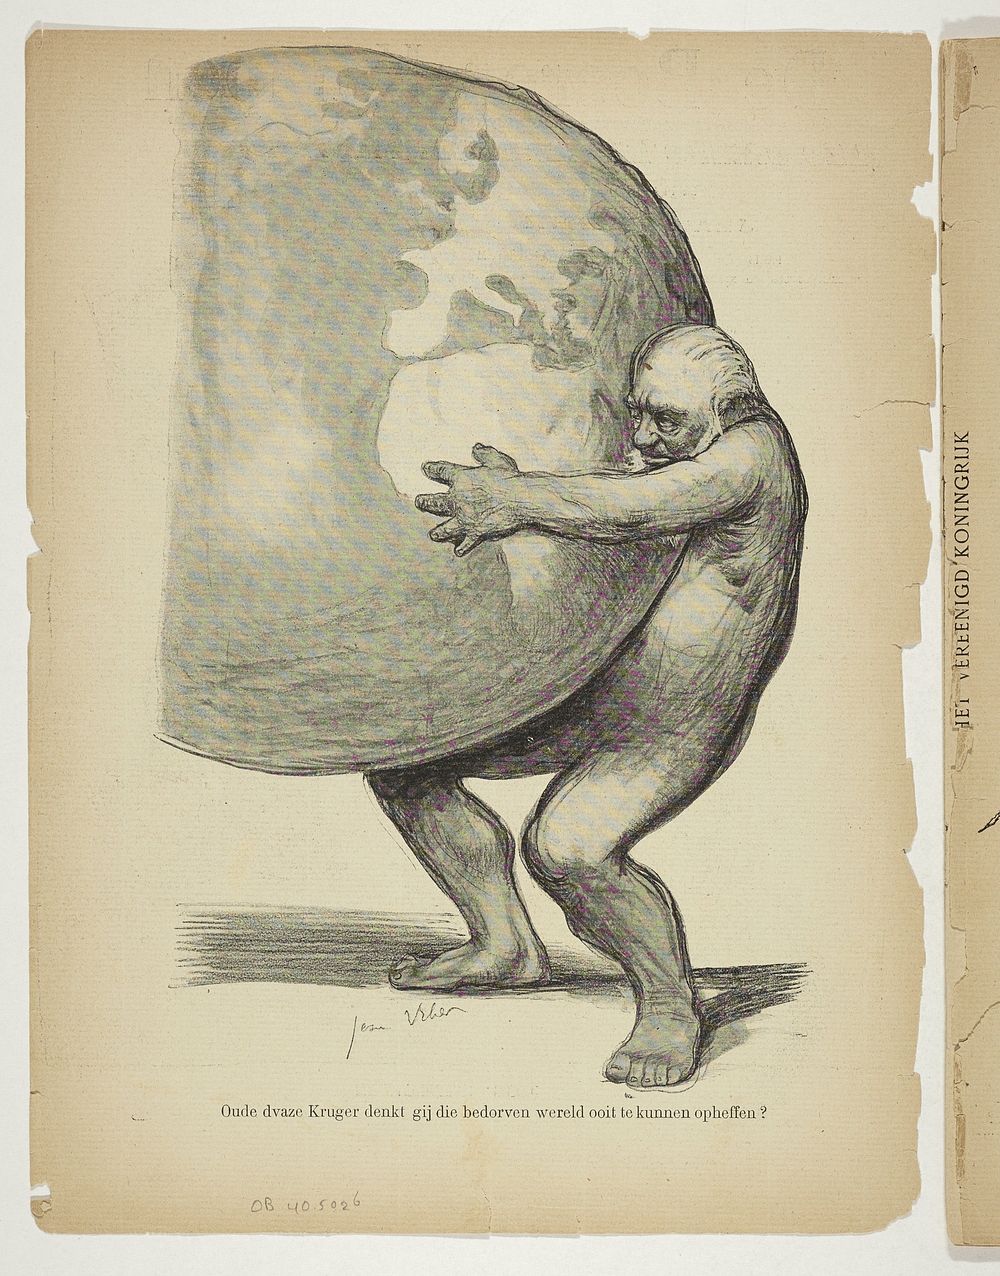 Naakte Paul Kruger houdt de wereld vast (1901) by anonymous, Jean Veber, Samuel Sigismond Schwarz and S L van Looy